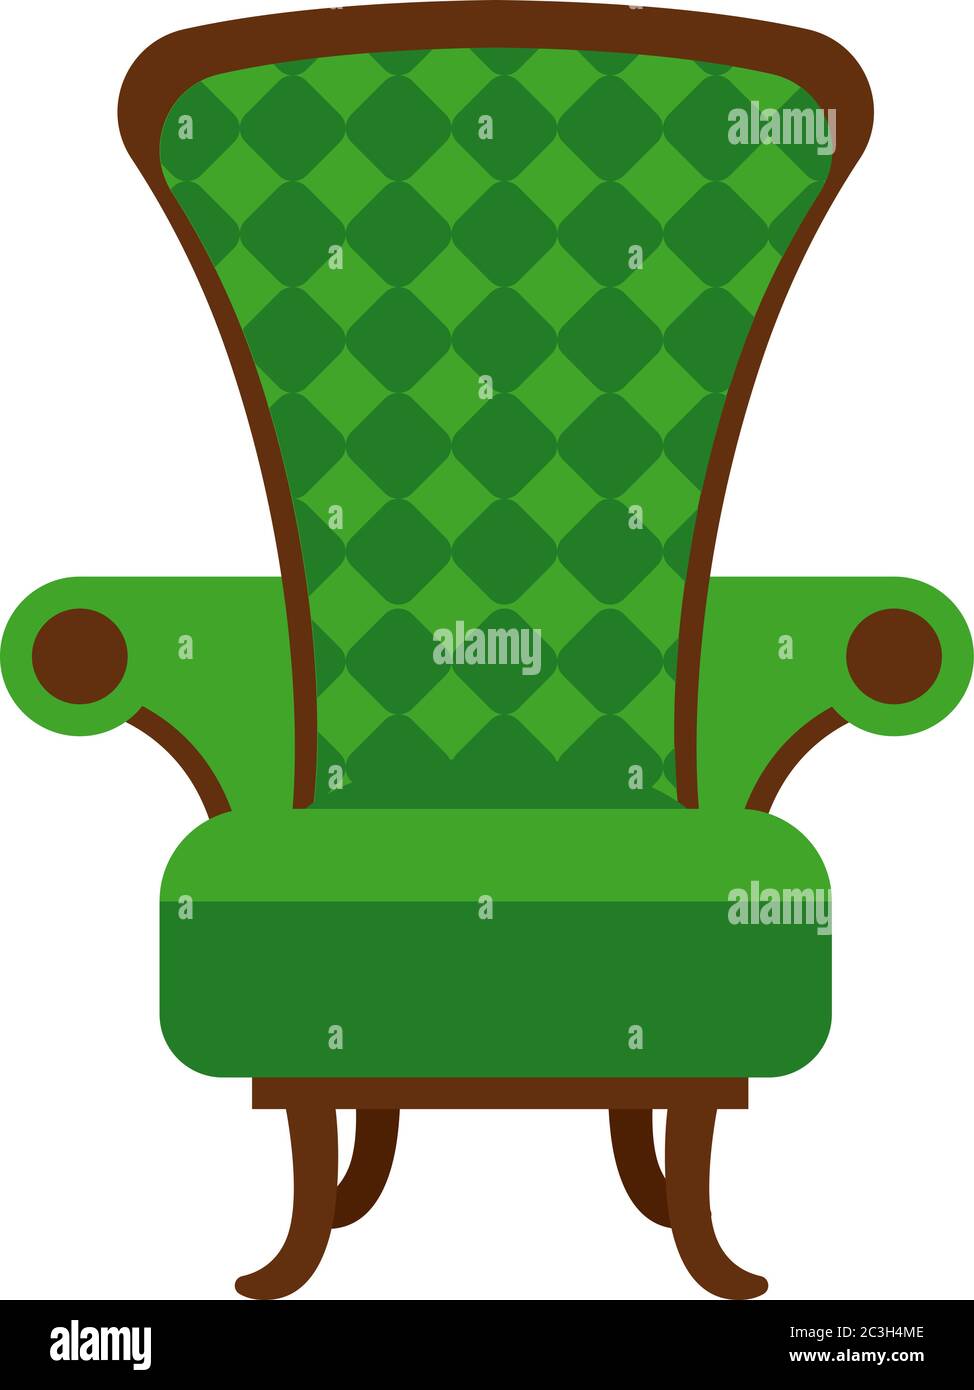 Gemütliches Zuhause grünen Stuhl mit Armlehnen und hoher Rückenlehne. Vektor-Illustration ist kein Möbel-Thema. Stock Vektor